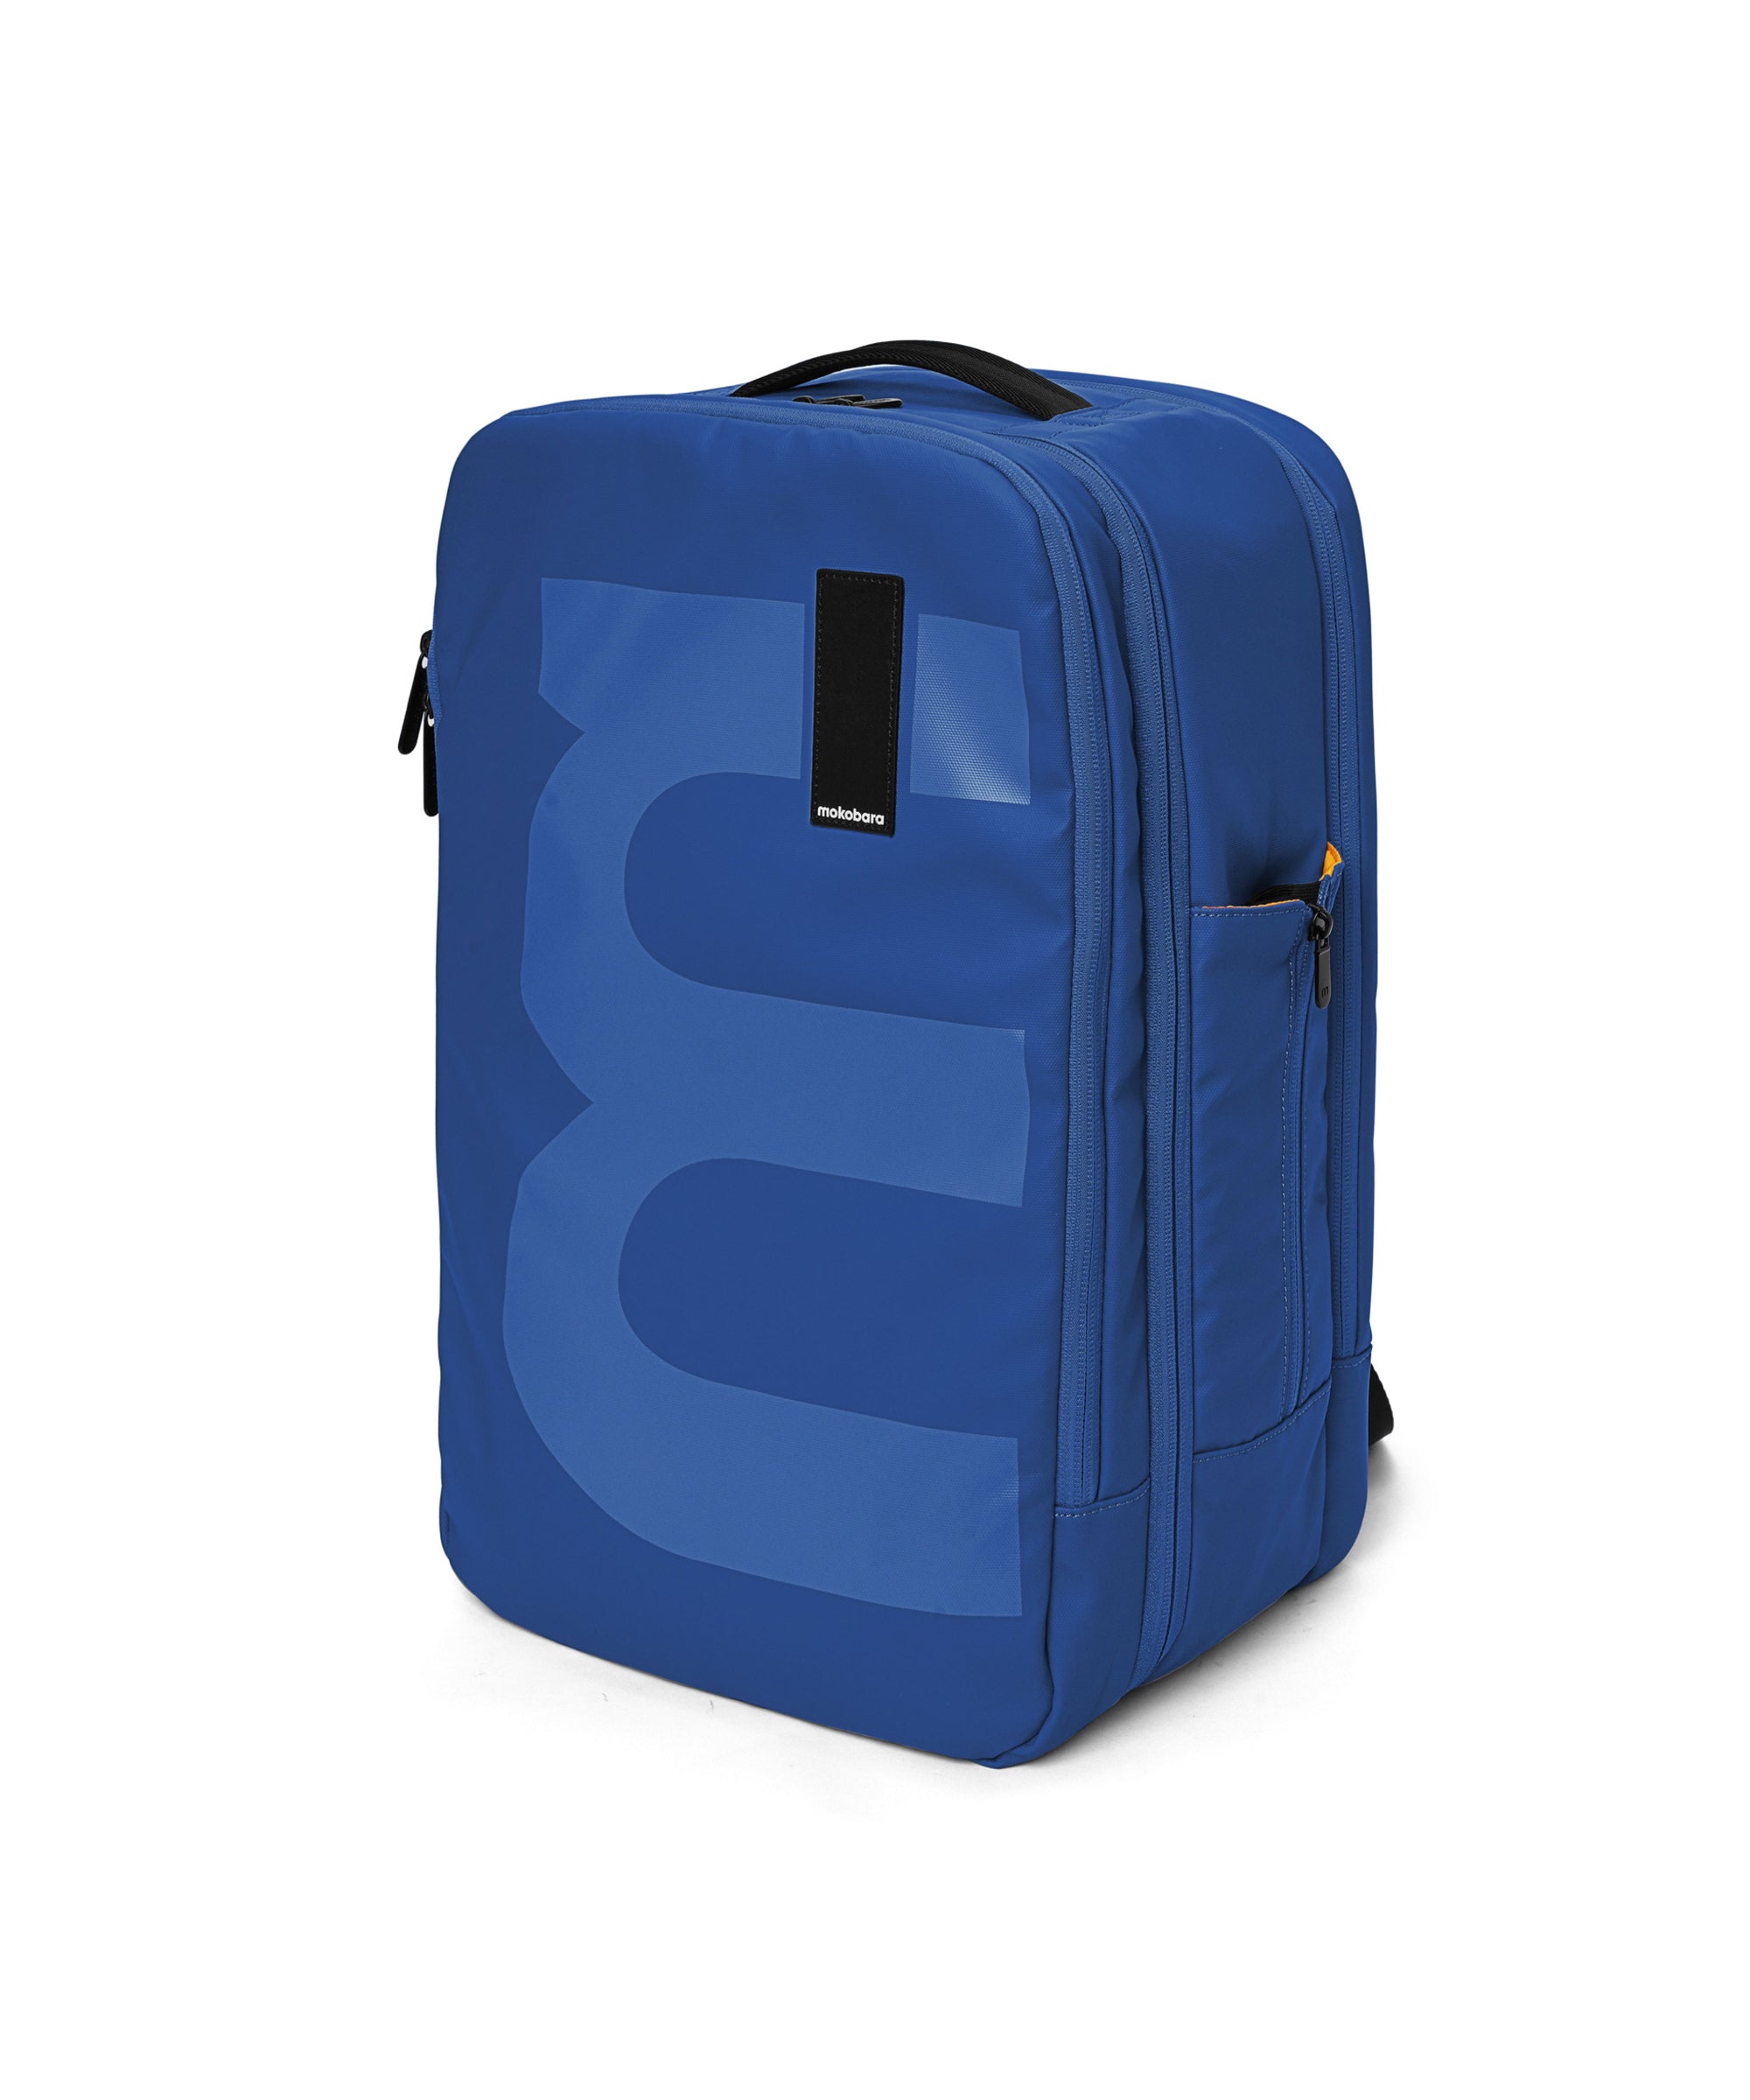 Color_Ocean | The Em Travel Backpack - 45L